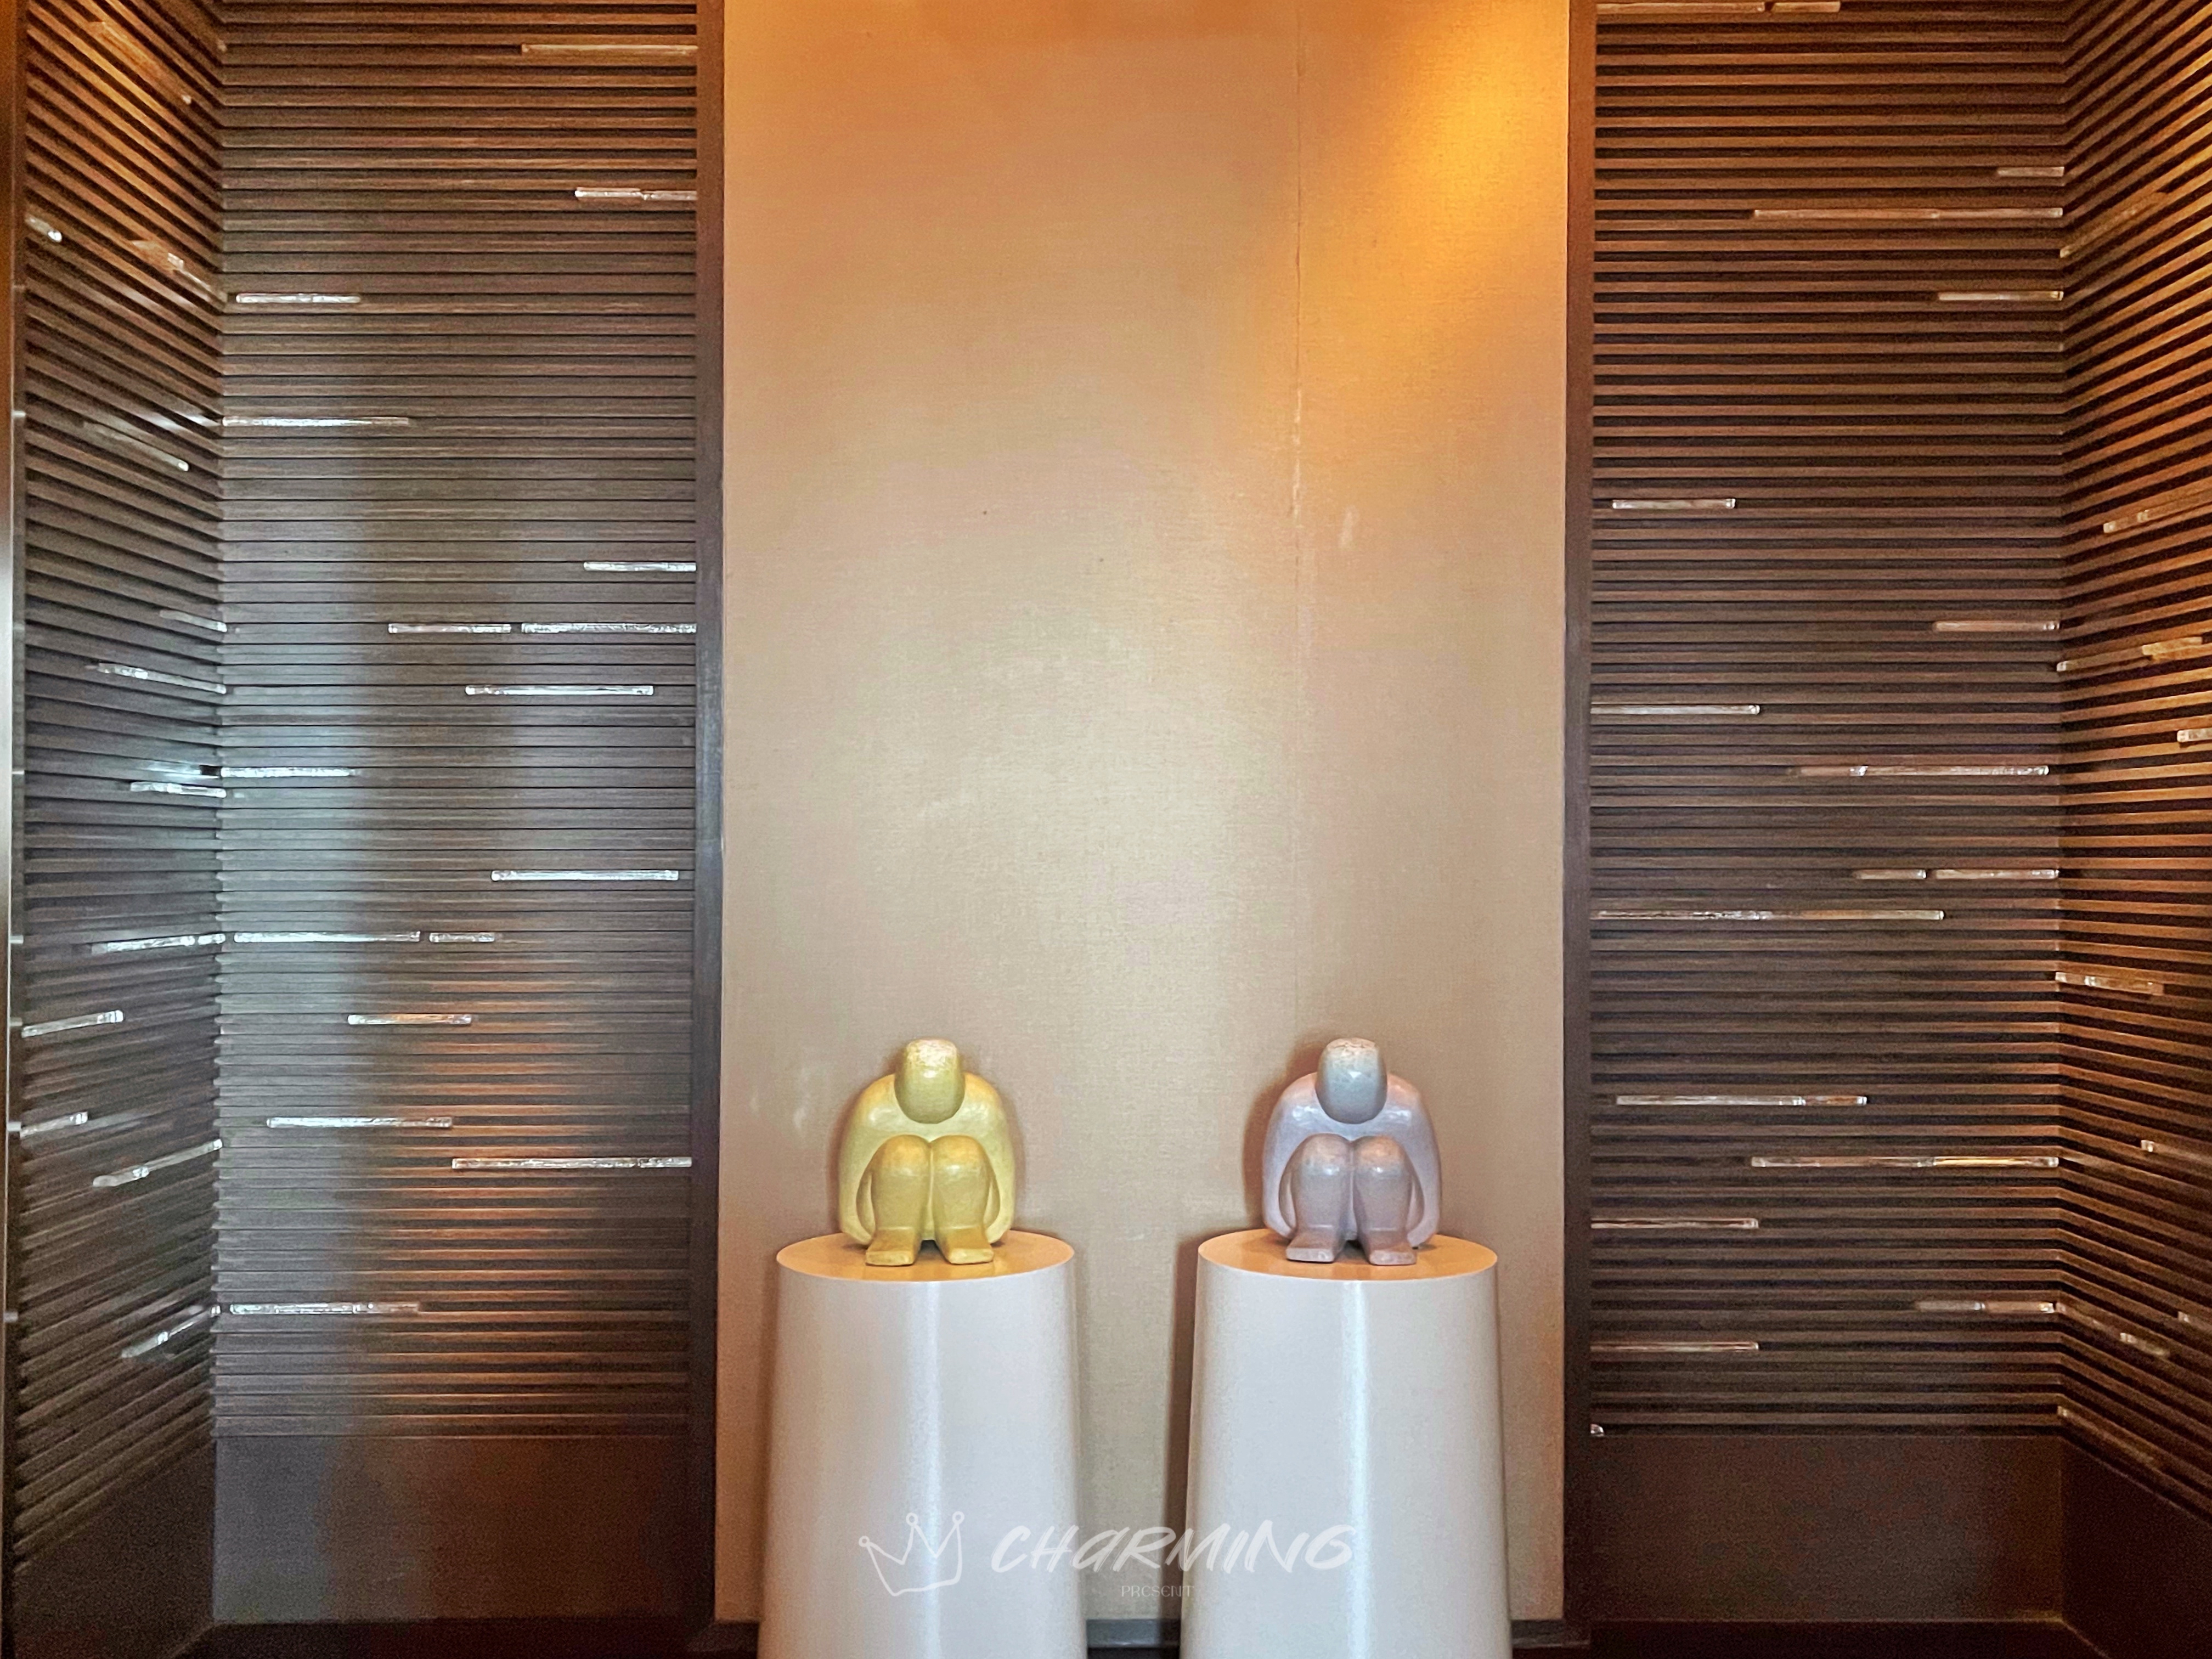 《CHΛRMIПG》上海柏悦中餐厅“悦轩” 难能可贵的奢华酒店上海本帮菜系